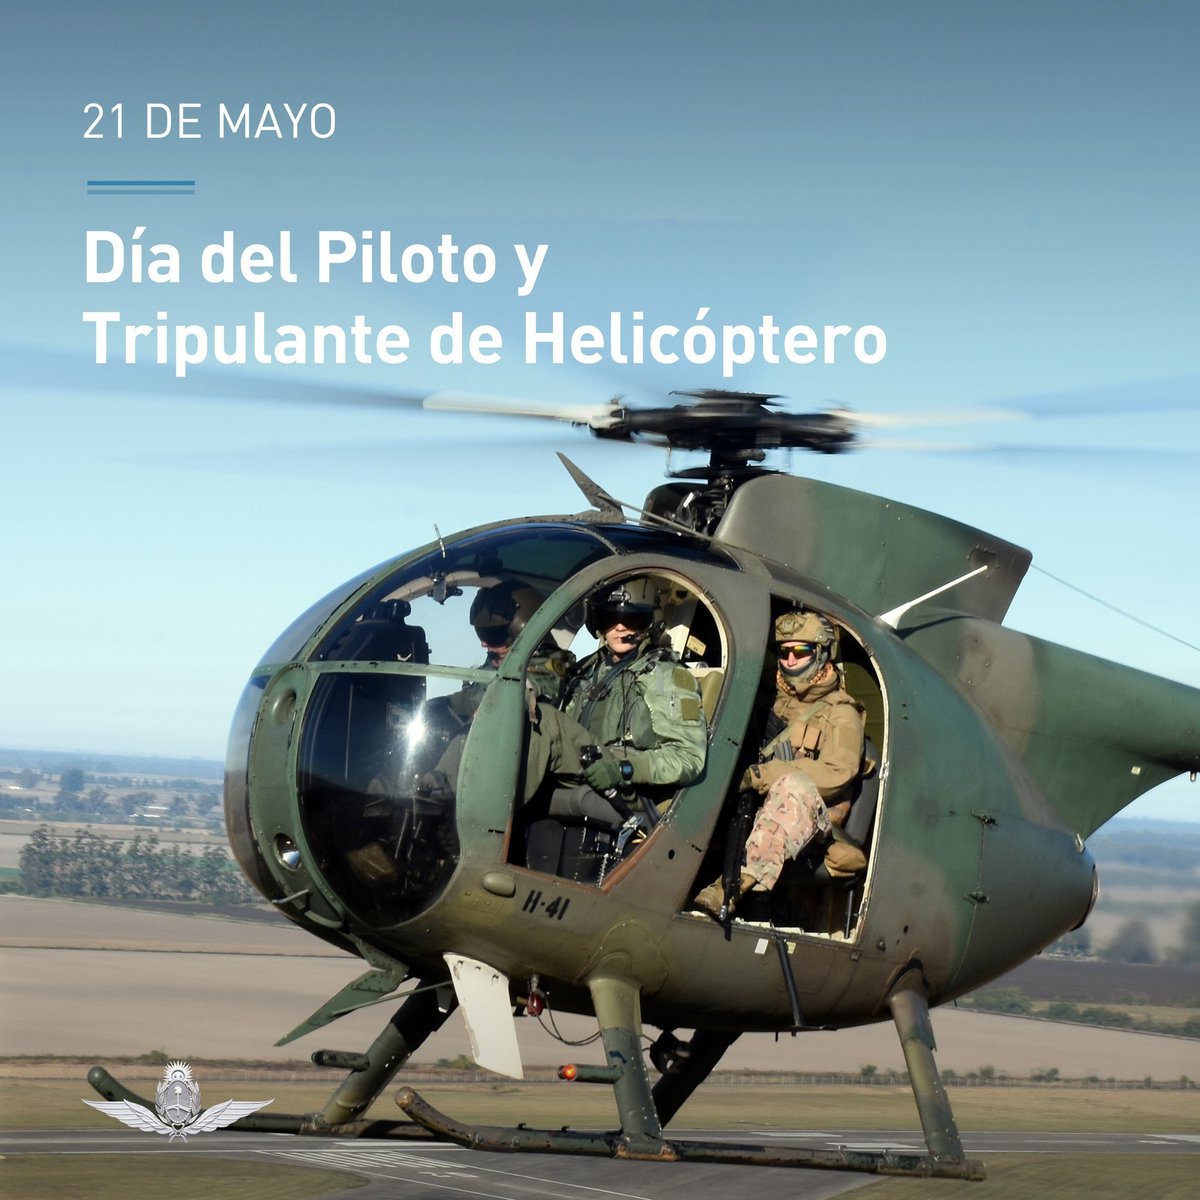 Día del Tripulante de Helicóptero de la Fuerza Aérea Argentina 📷
21 de mayo de 1982
#GestaDeMalvinas #PorSiempreMalvinas #OrgulloDePertenecer #FuerzaAéreaArgentina #MalvinasArgentinas  #VIIBrigadaAérea #SiempreYEnTodoLugar #DíaDelTripulanteDeHelicóptero #FAA #55Héroes